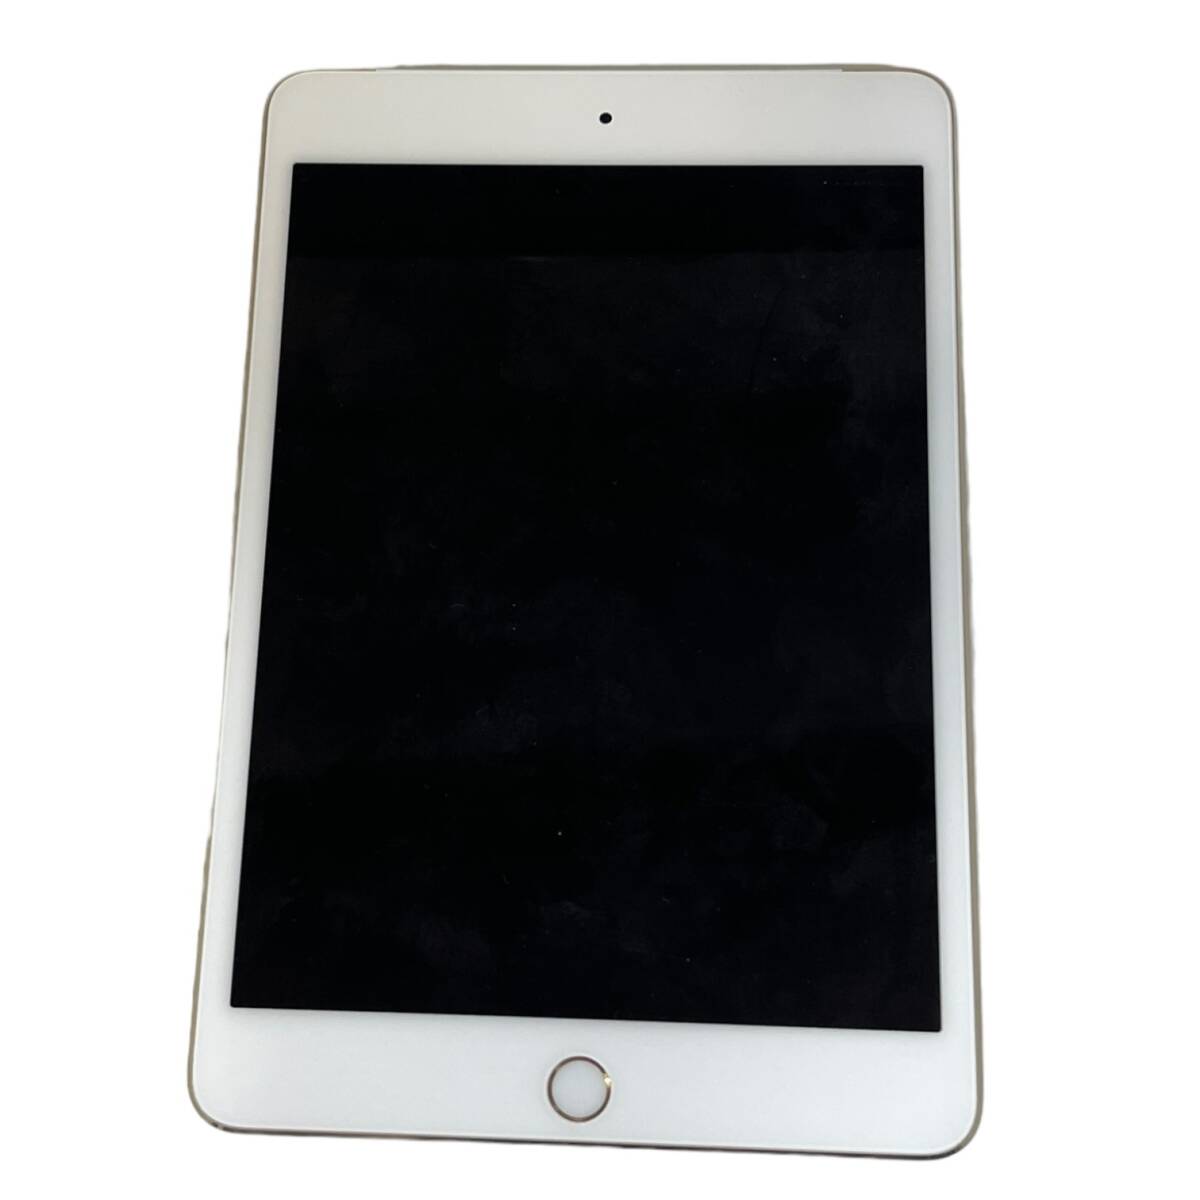 【中古品】初期化済 Apple iPad mini4 ゴールド 16GB MK712J/A Wi-Fi+Cellular SIMフリー ソフトバンク 判定:〇 箱無し L64383RLの画像4